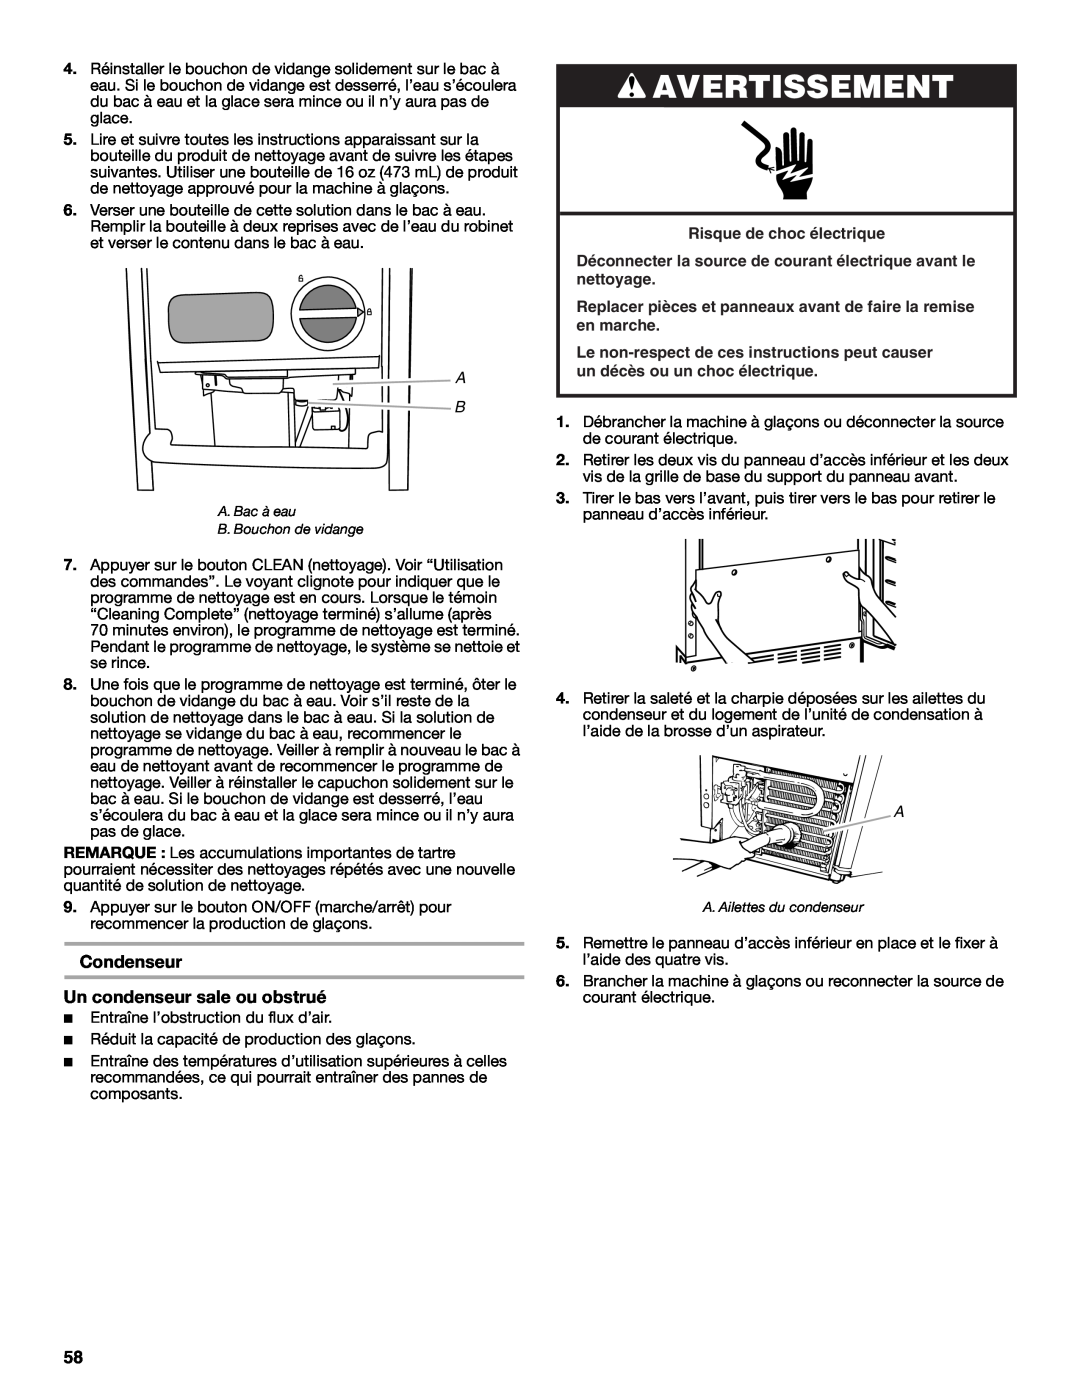 Jenn-Air W10519943B manual Condenseur Un condenseur sale ou obstrué, Avertissement 